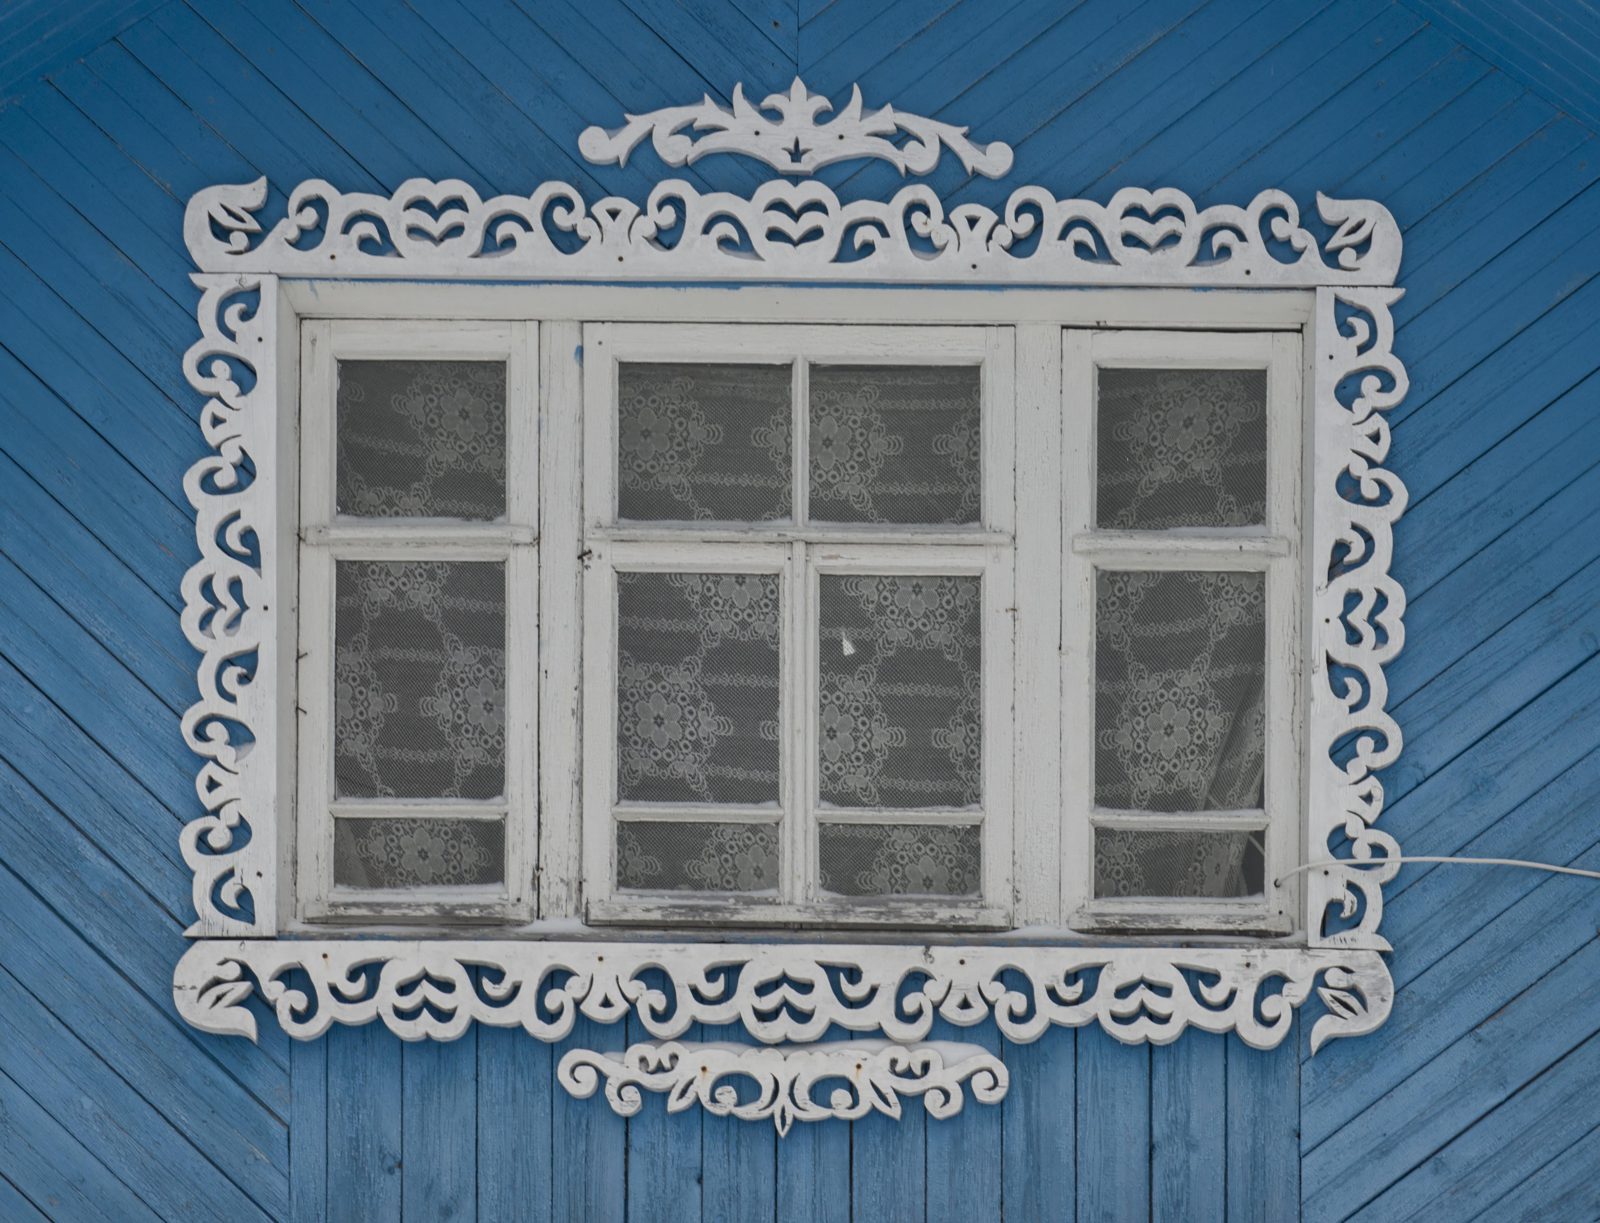 Якось розмова зайшла про красу наличників, що прикрашають вікна на хатах центральній частині Росії